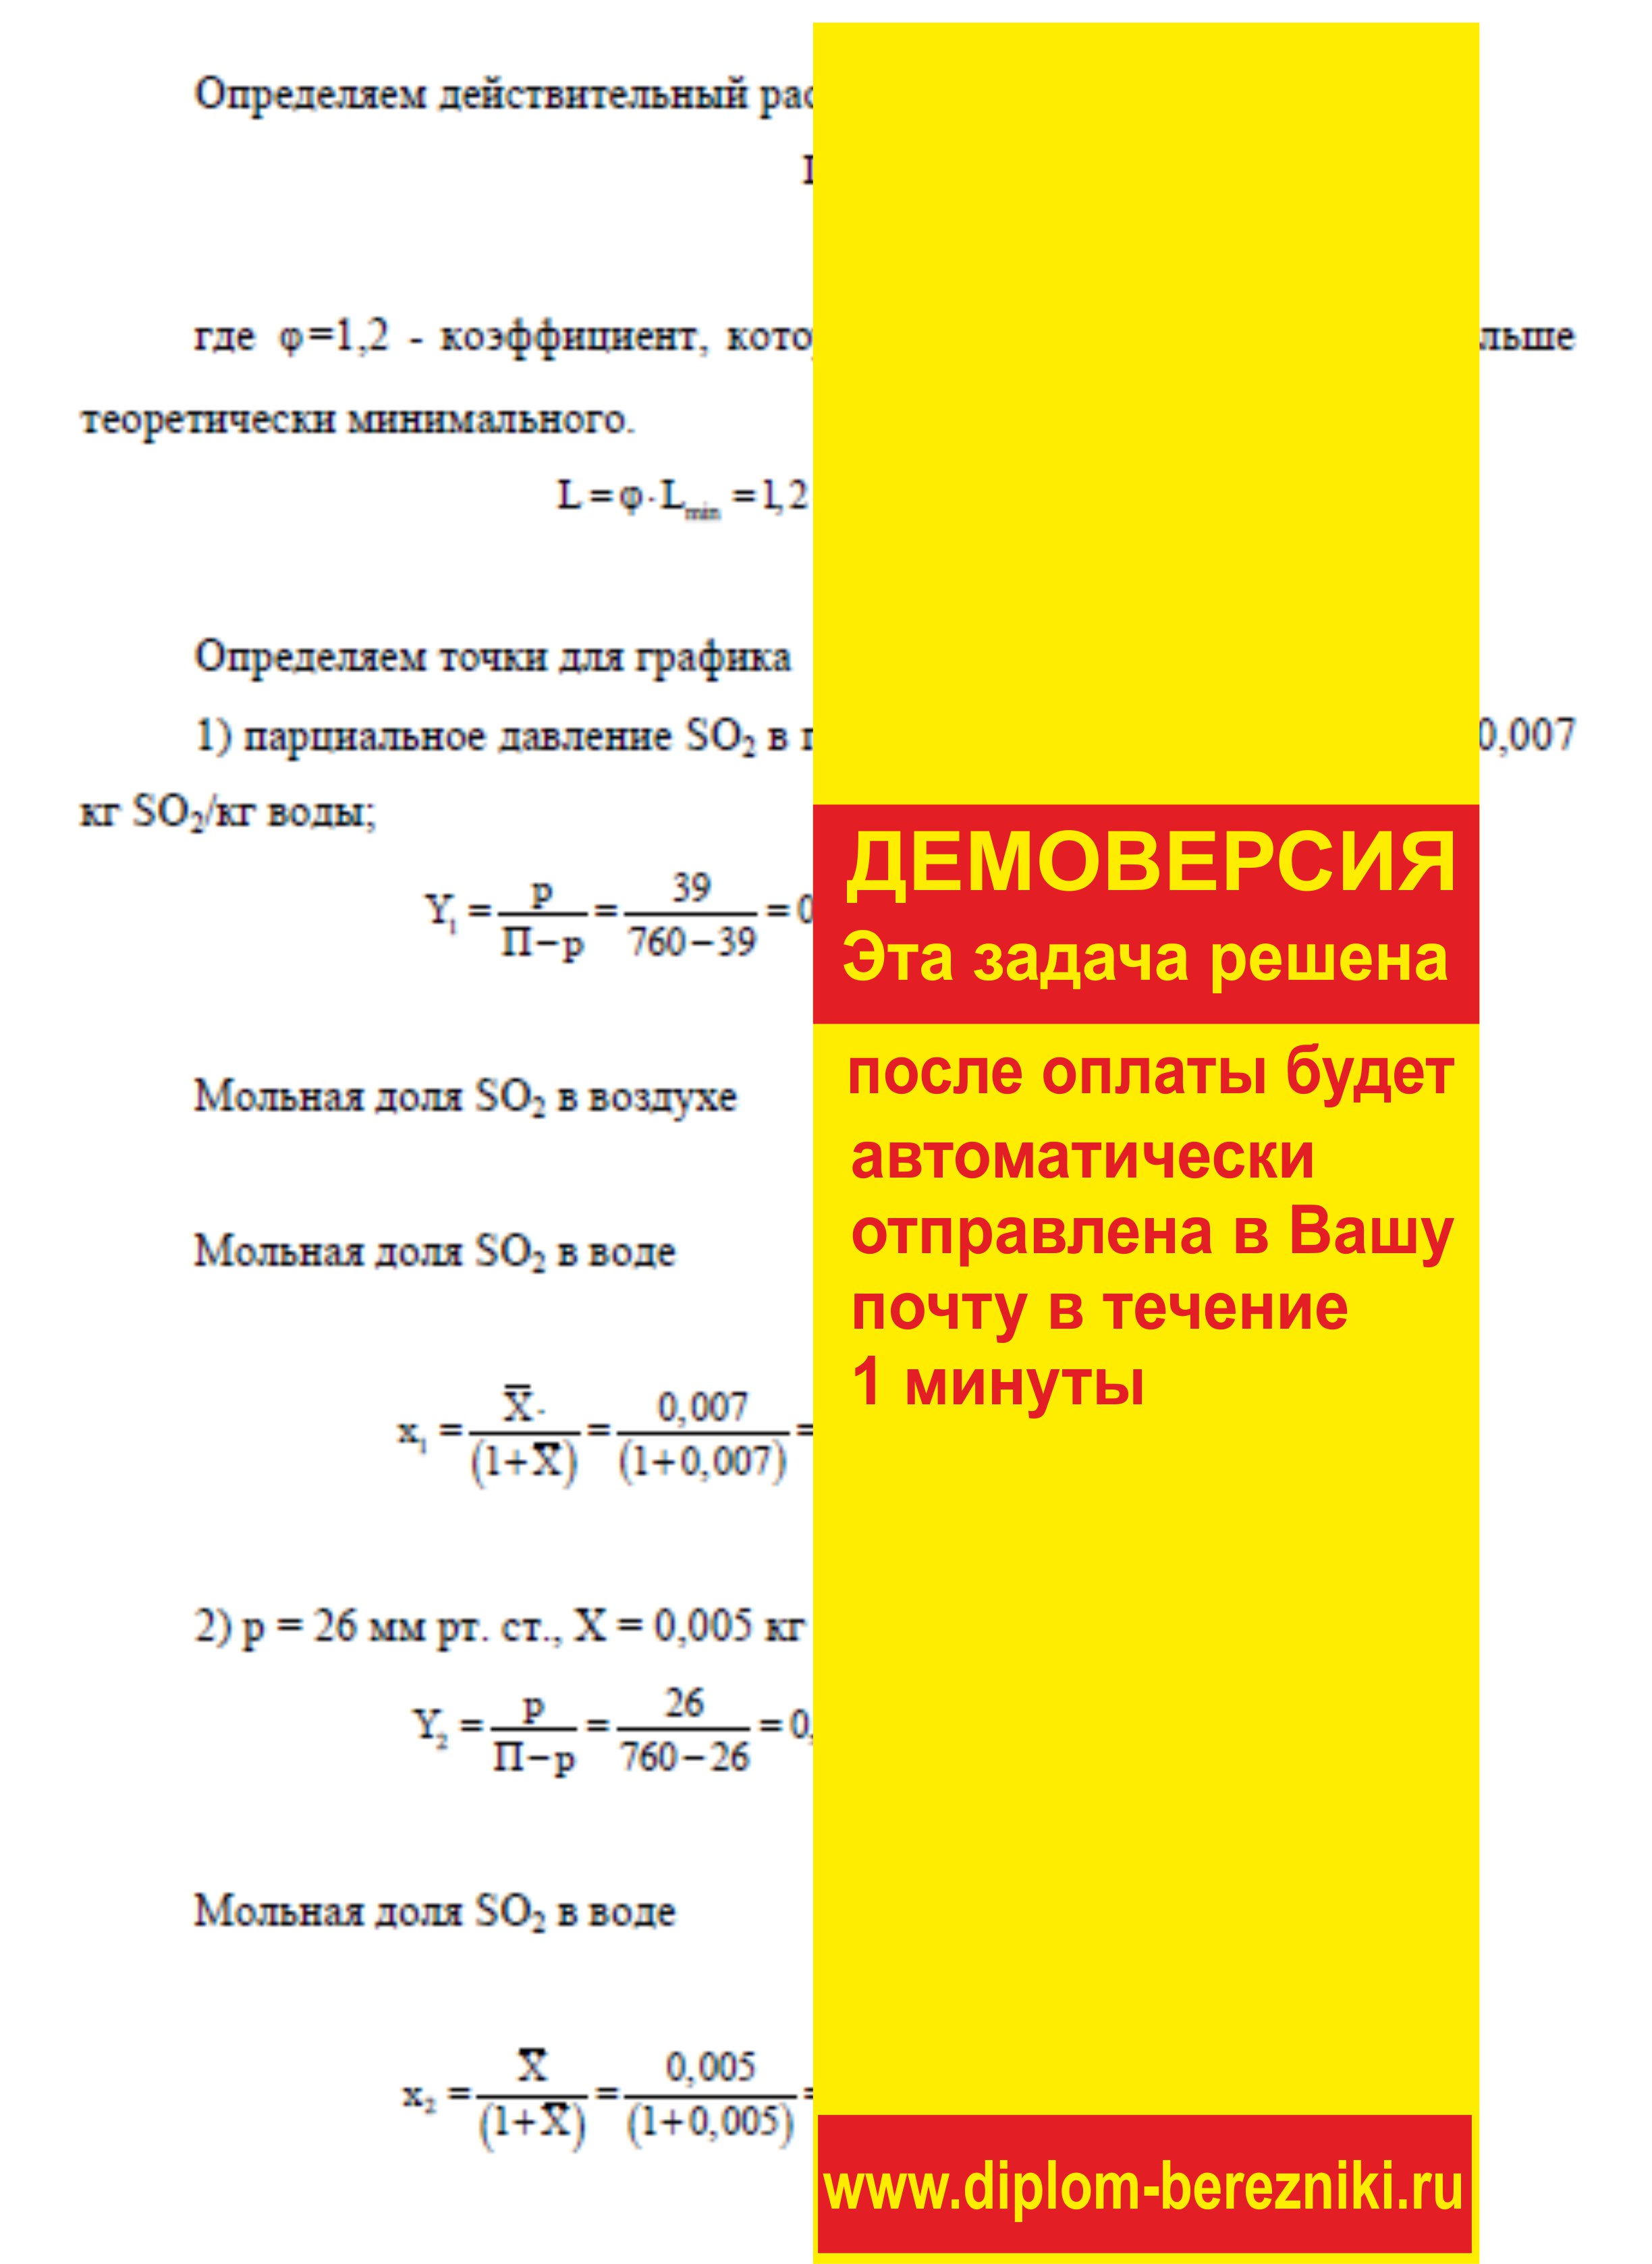 Решение задачи 6.13 по ПАХТ из задачника Павлова Романкова Носкова